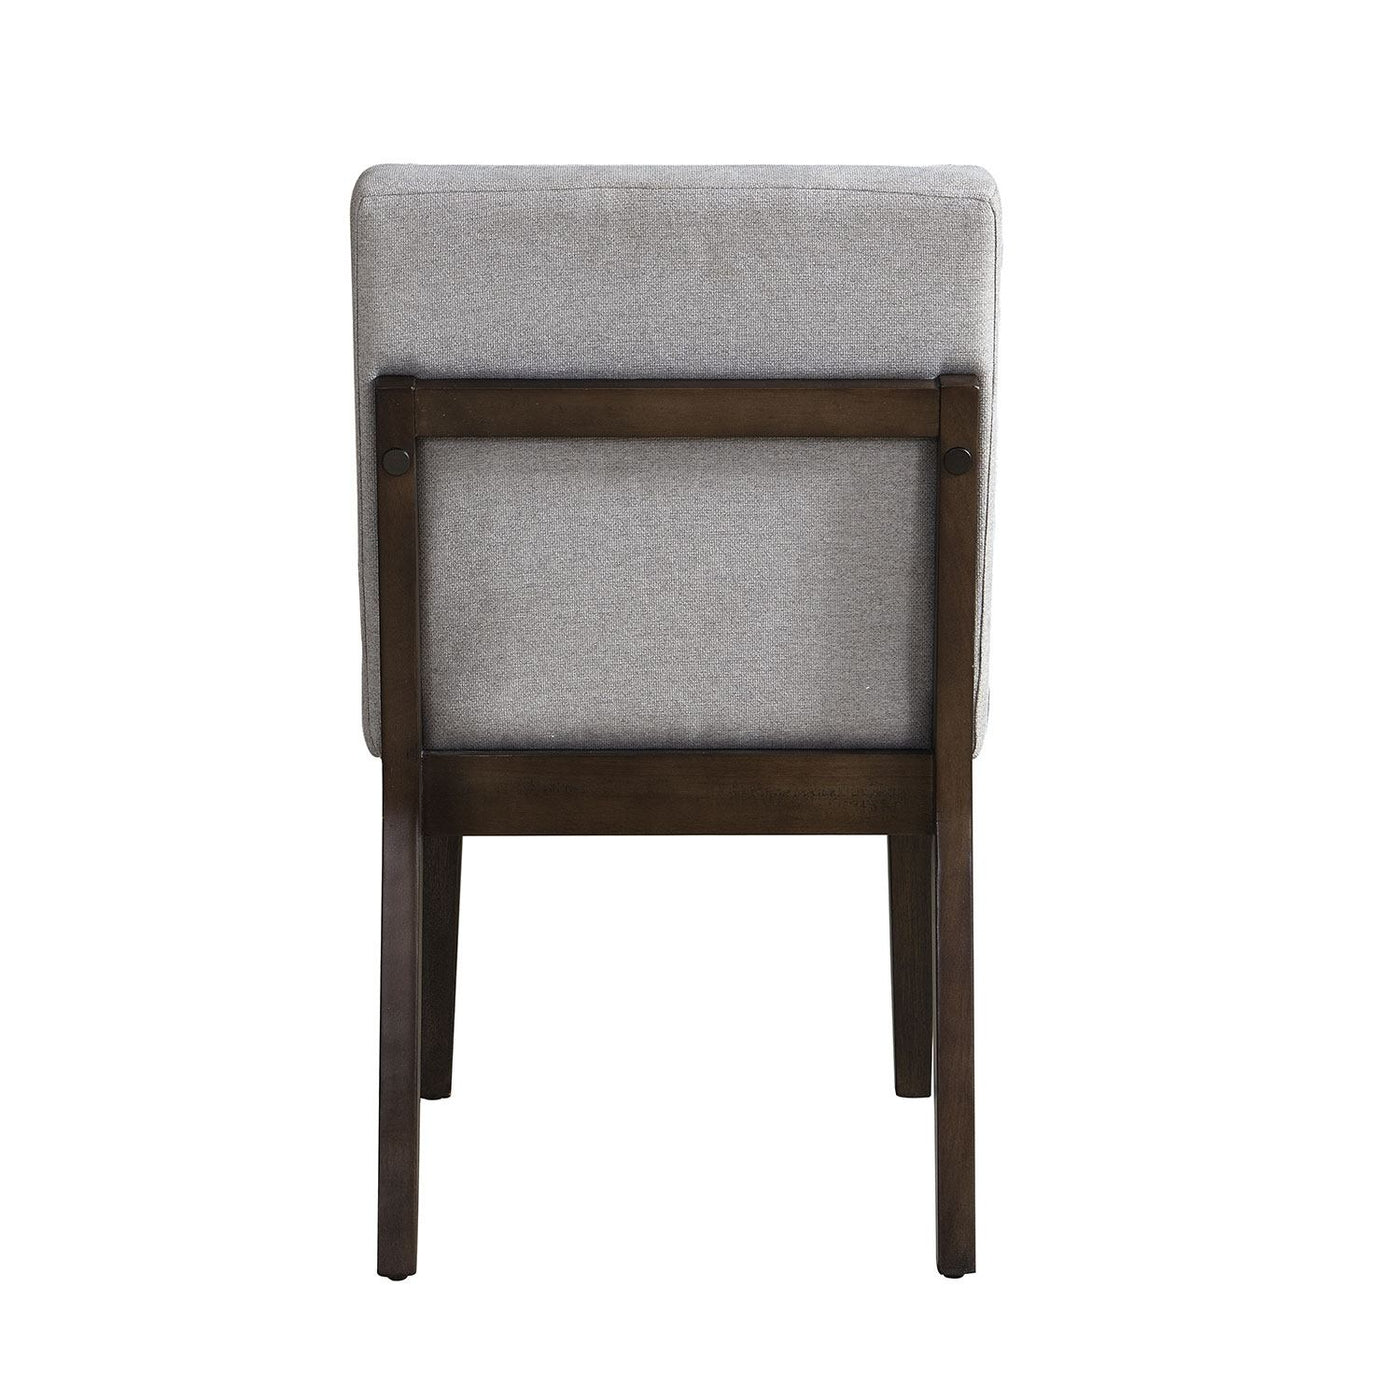 Maeve Dining Chair - Grey, Espresso